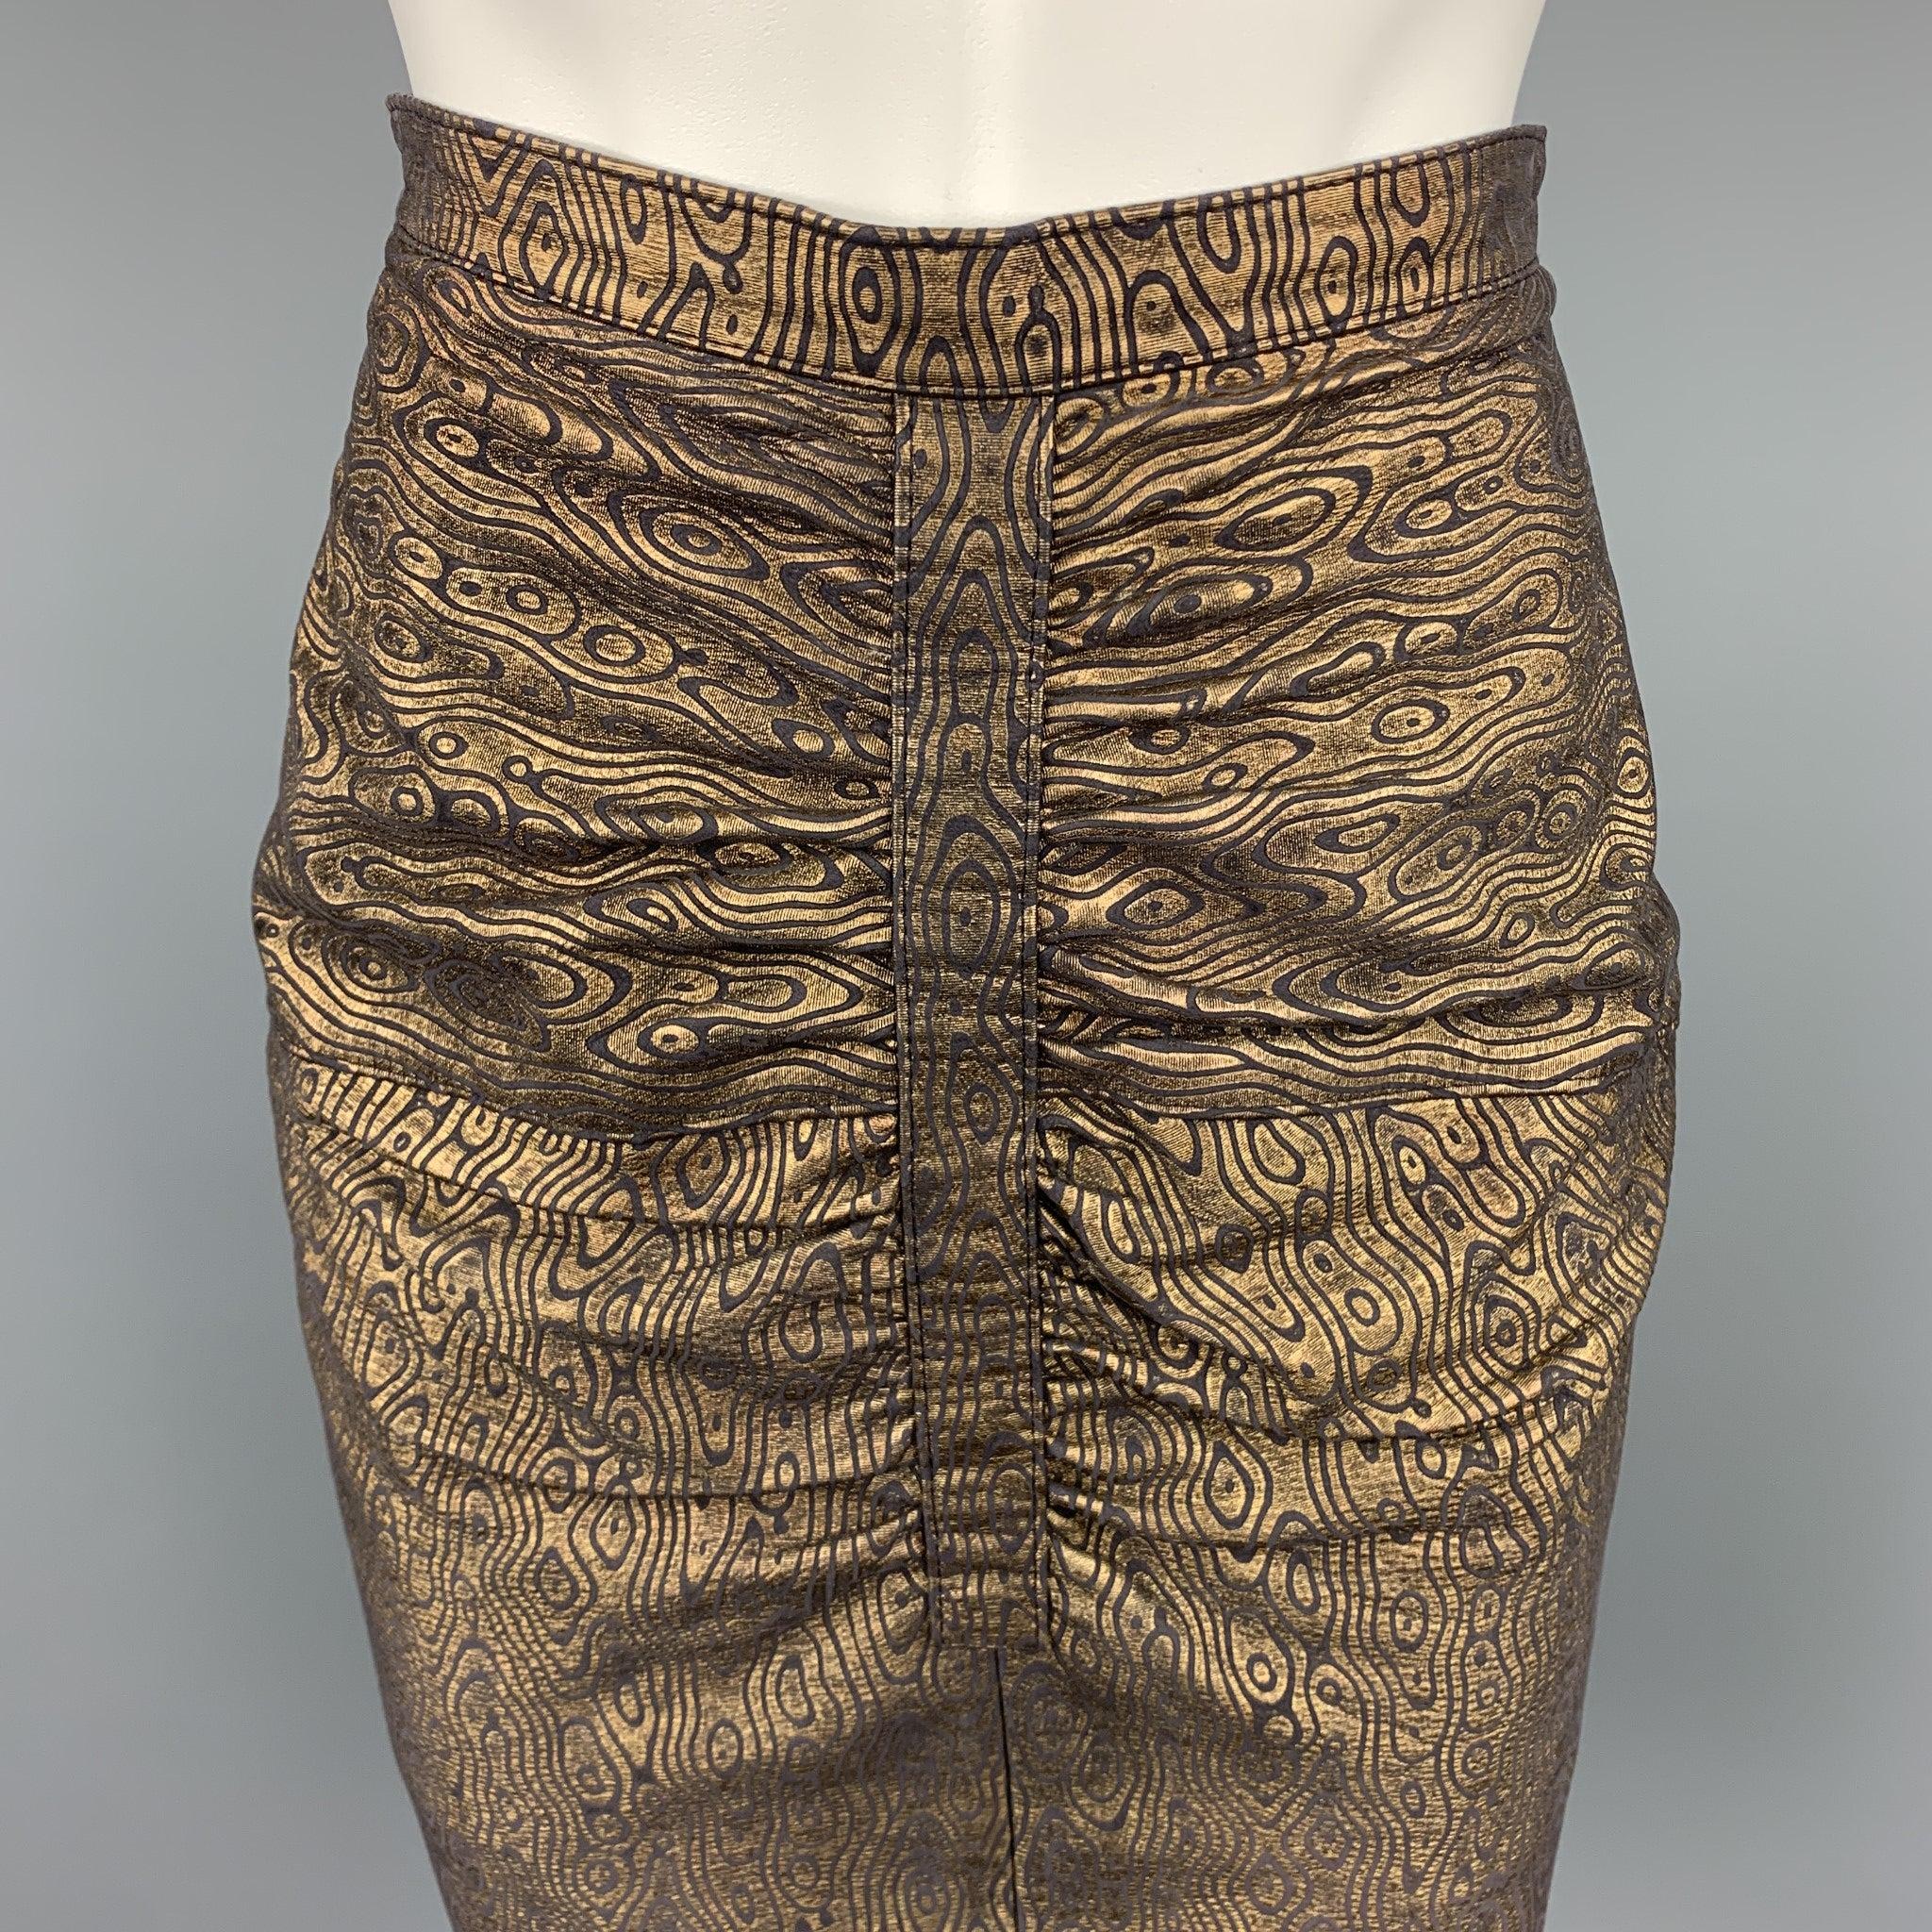 La jupe Harrods by INGRID MUHLHOFER se présente sous la forme d'un cuir abstrait or et noir avec une doublure noire intégrale. Elle présente un style ruché et une fermeture à glissière au dos. Fabriqué en Italie.
Etat d'occasion. 

Marqué :   8